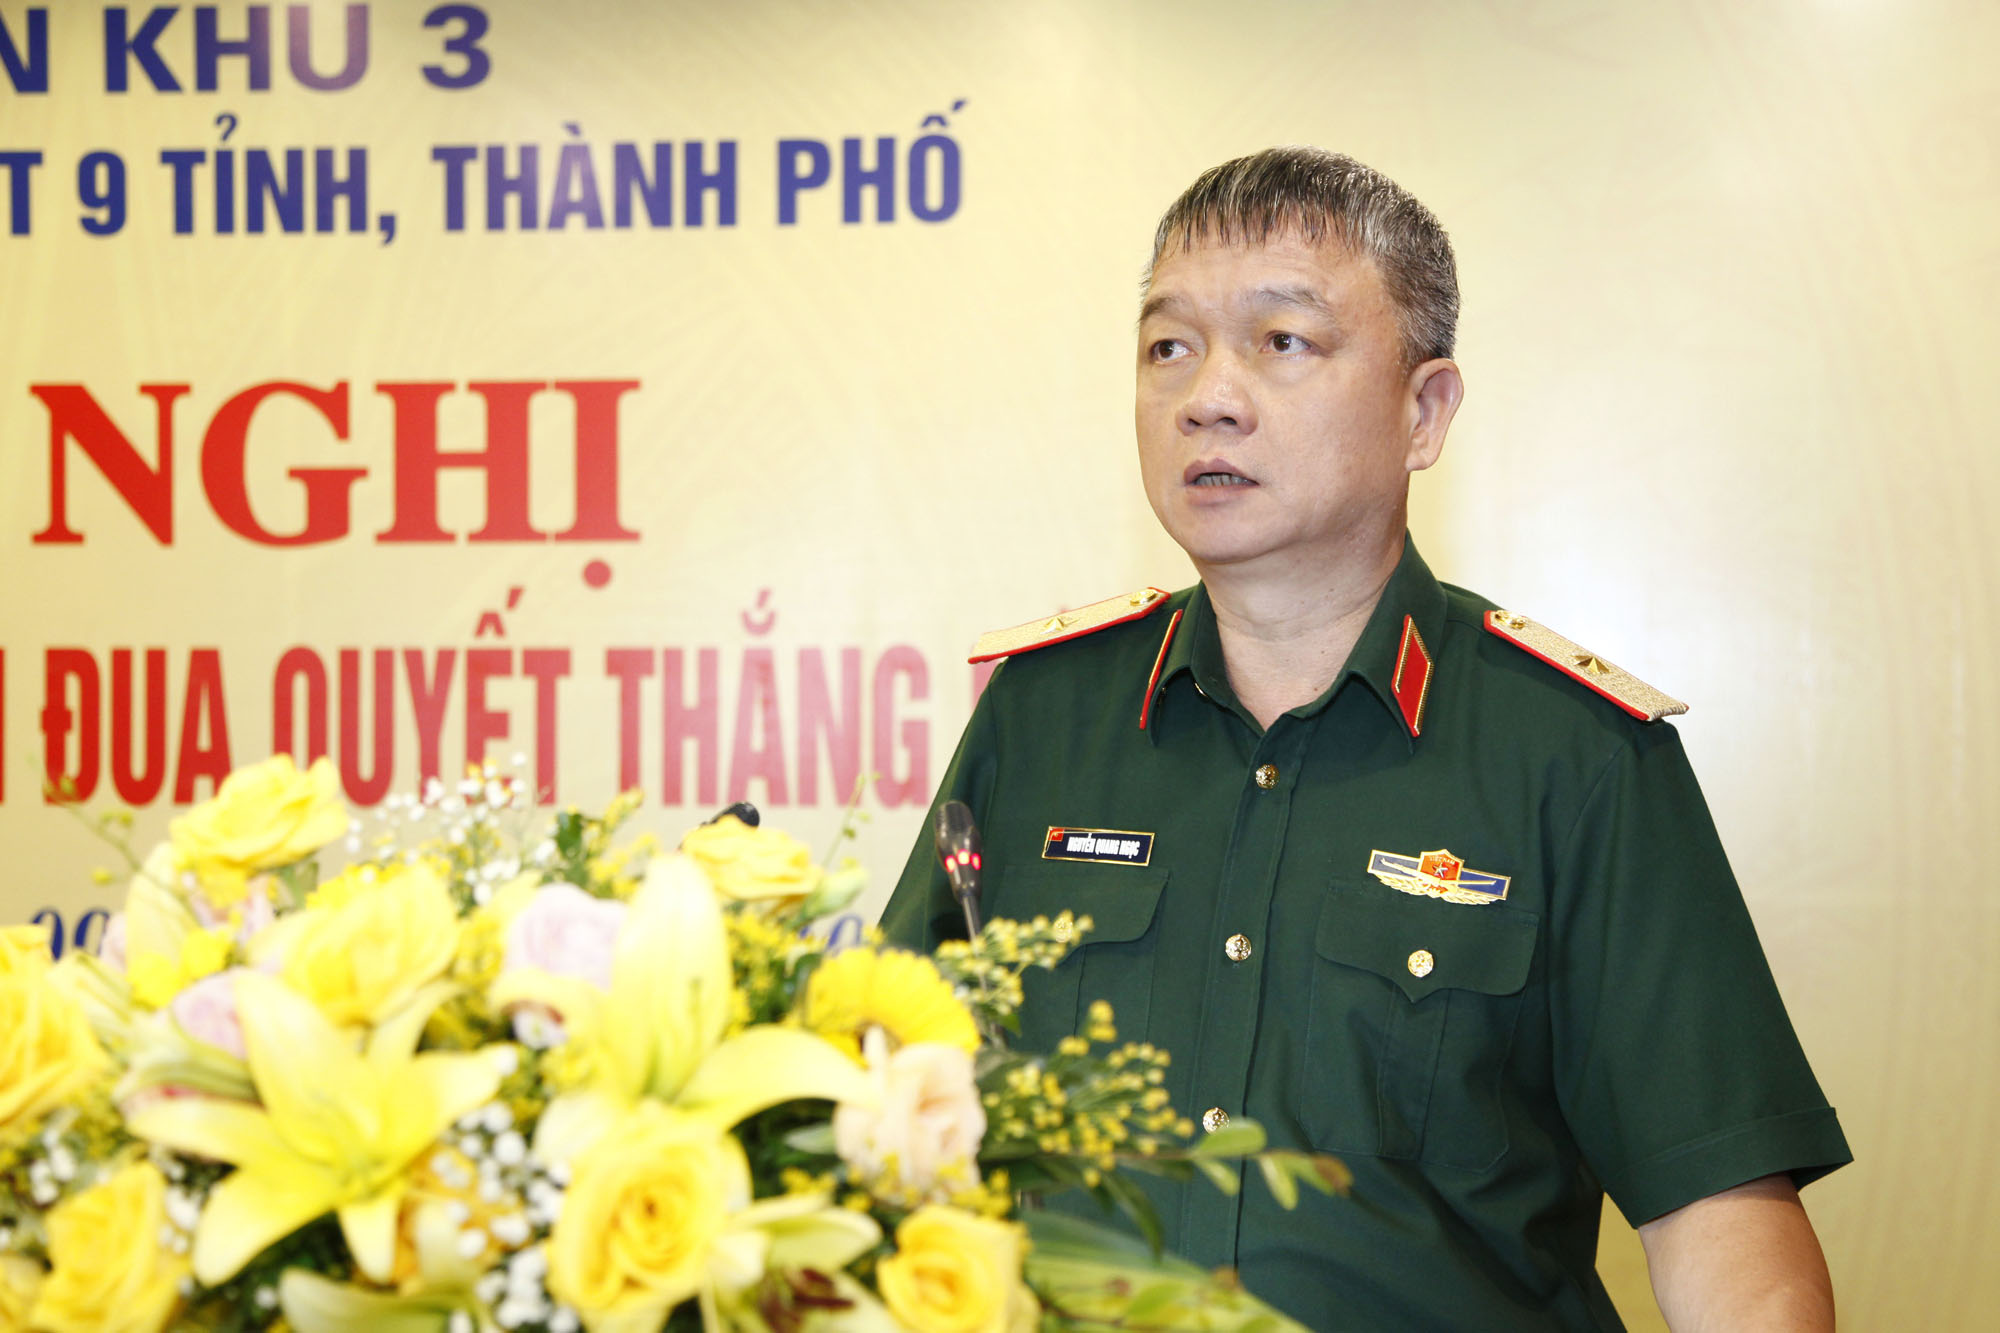 Thiếu tướng Nguyễn Quang Ngọc, Phó Bí thư Đảng ủy, Tư lệnh Quân khu 3, phát biểu chỉ đạo hội nghị.